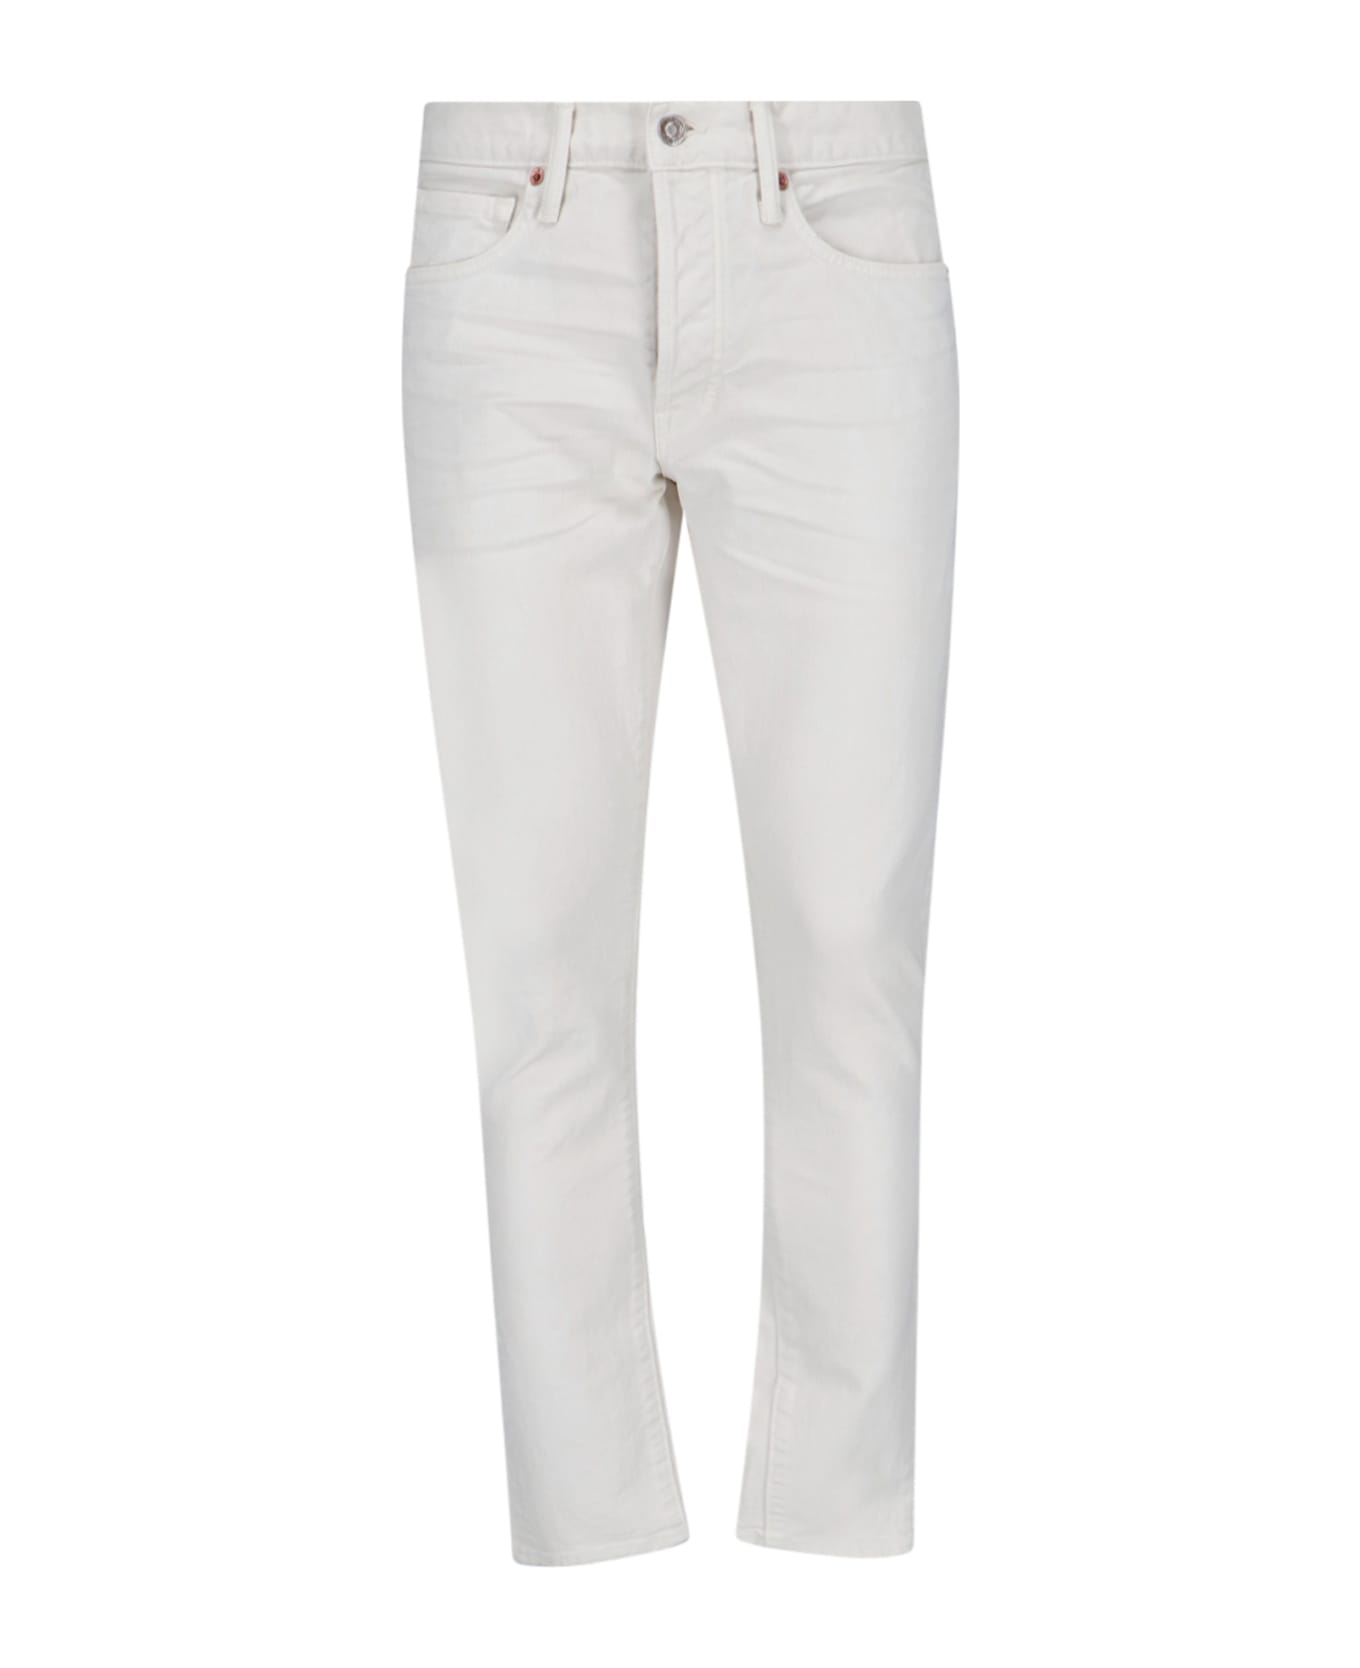 Tom Ford Slim Jeans - White